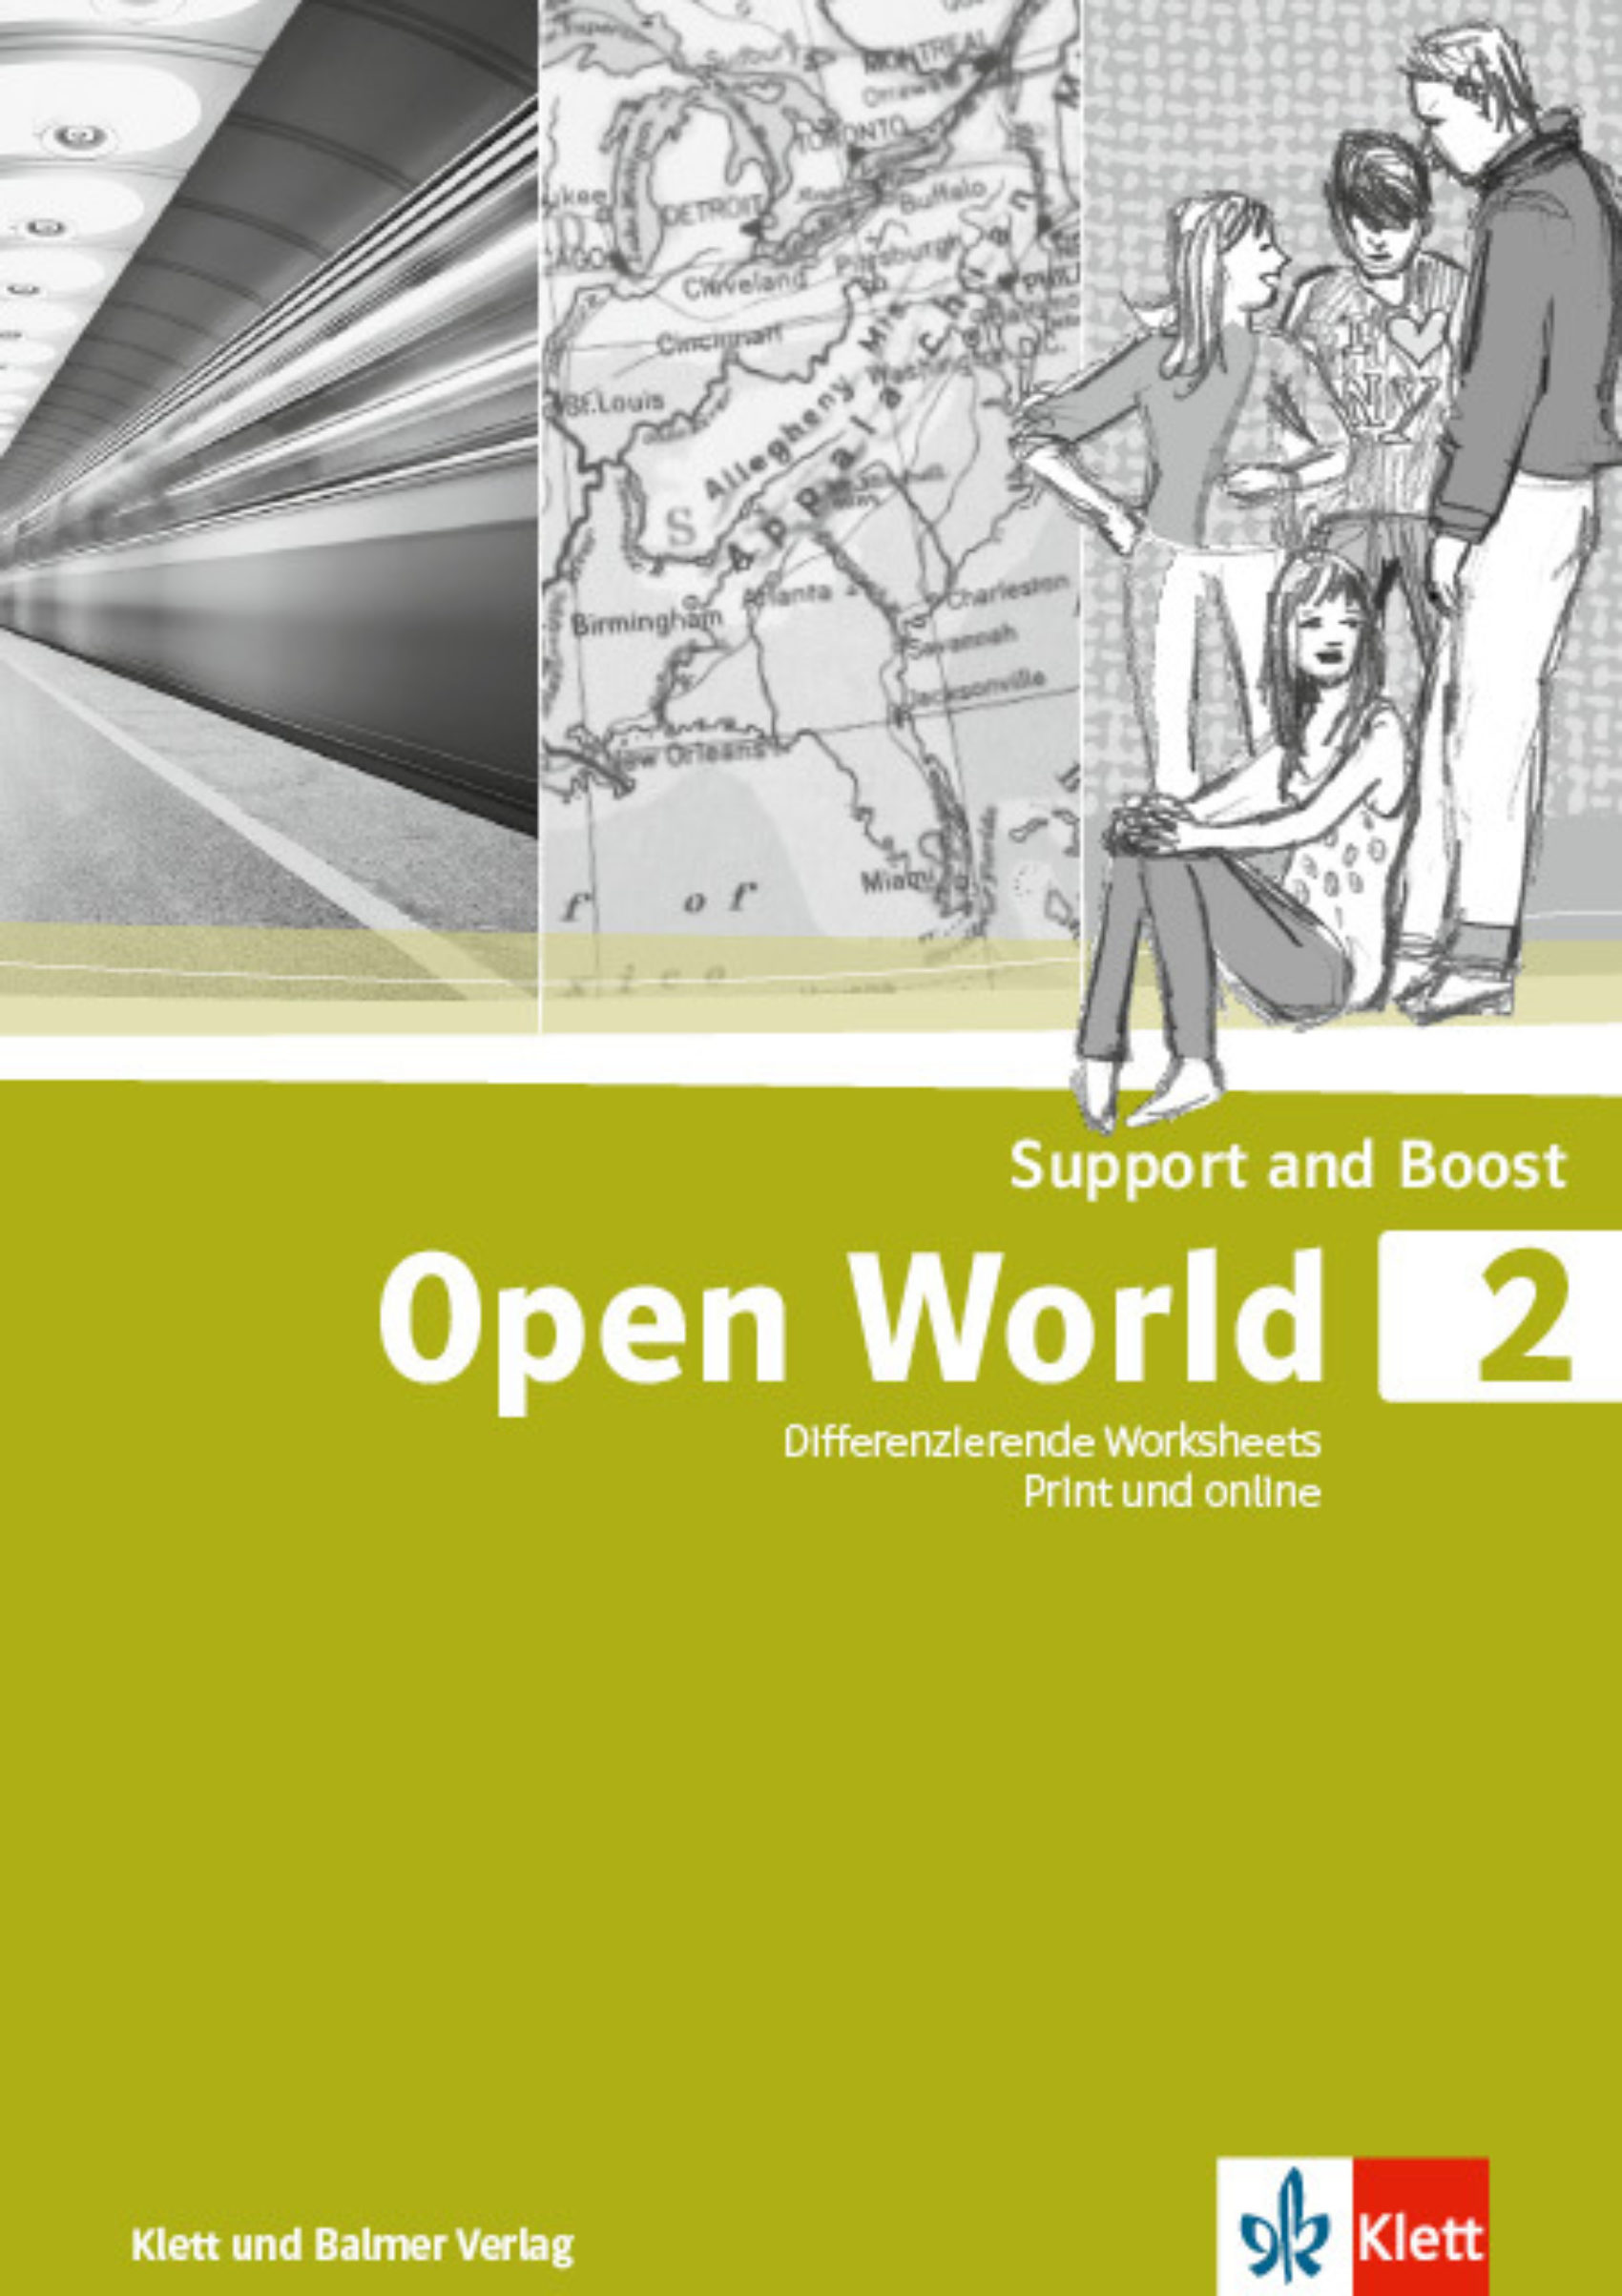 Support and boost open world 2 978 3 264 84259 3 klett und balmer